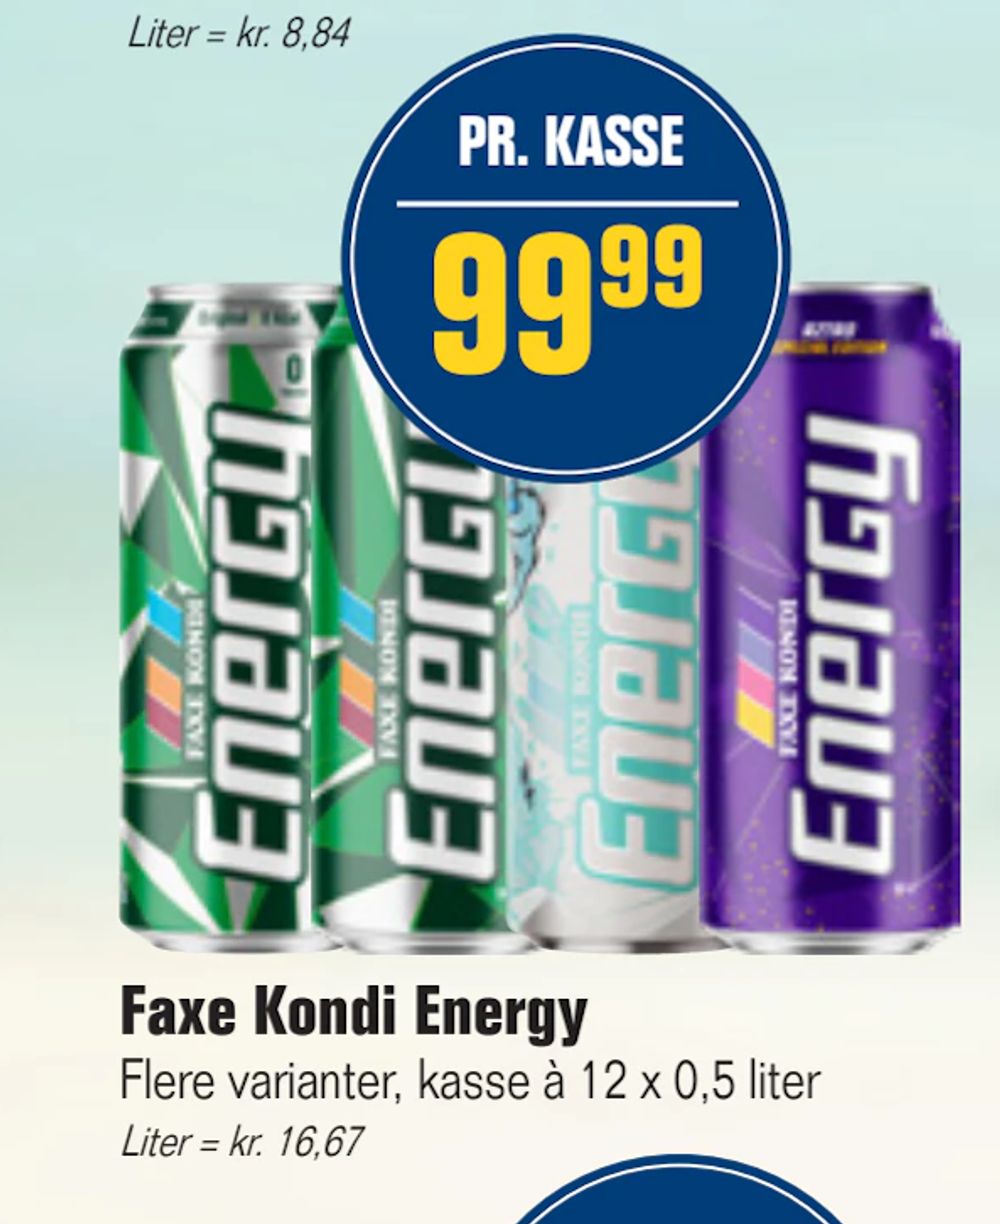 Tilbud på Faxe Kondi Energy fra Otto Duborg til 99,99 kr.